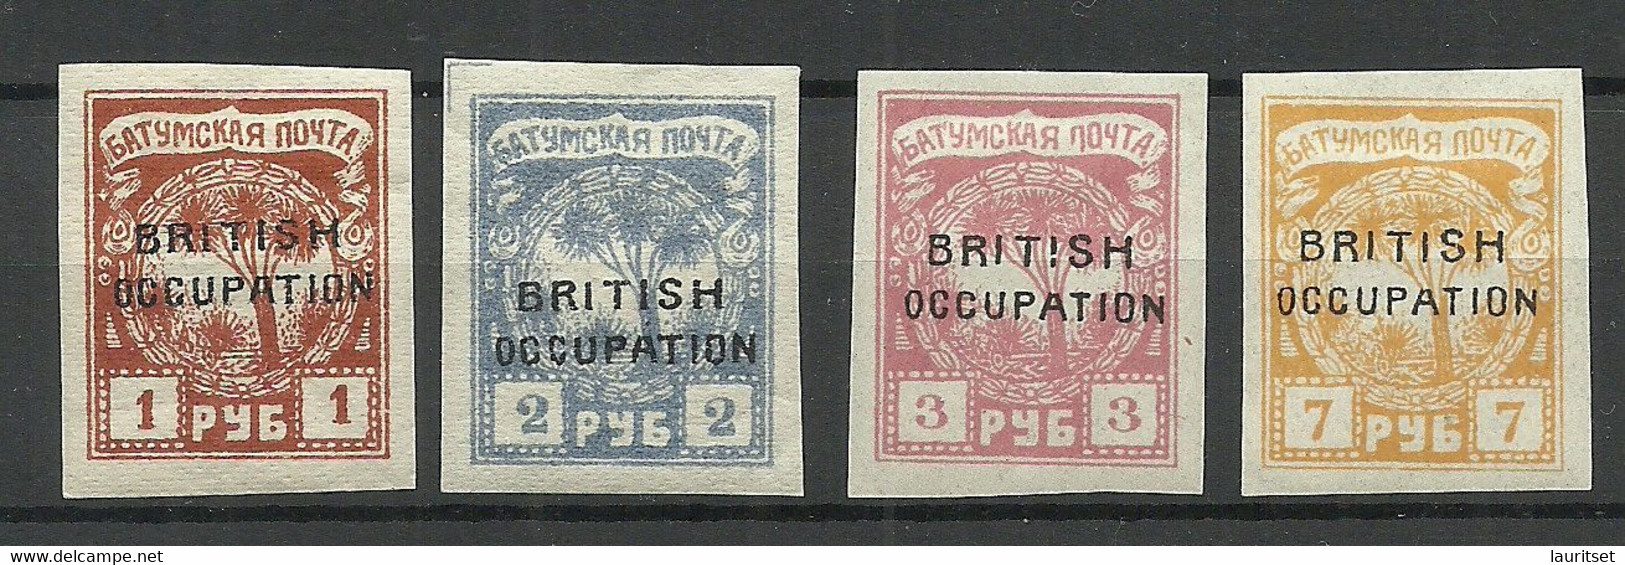 BATUM Batumi RUSSLAND RUSSIA 1919 British Occupation, 4 Stamps,* - 1919-20 Britische Besatzung